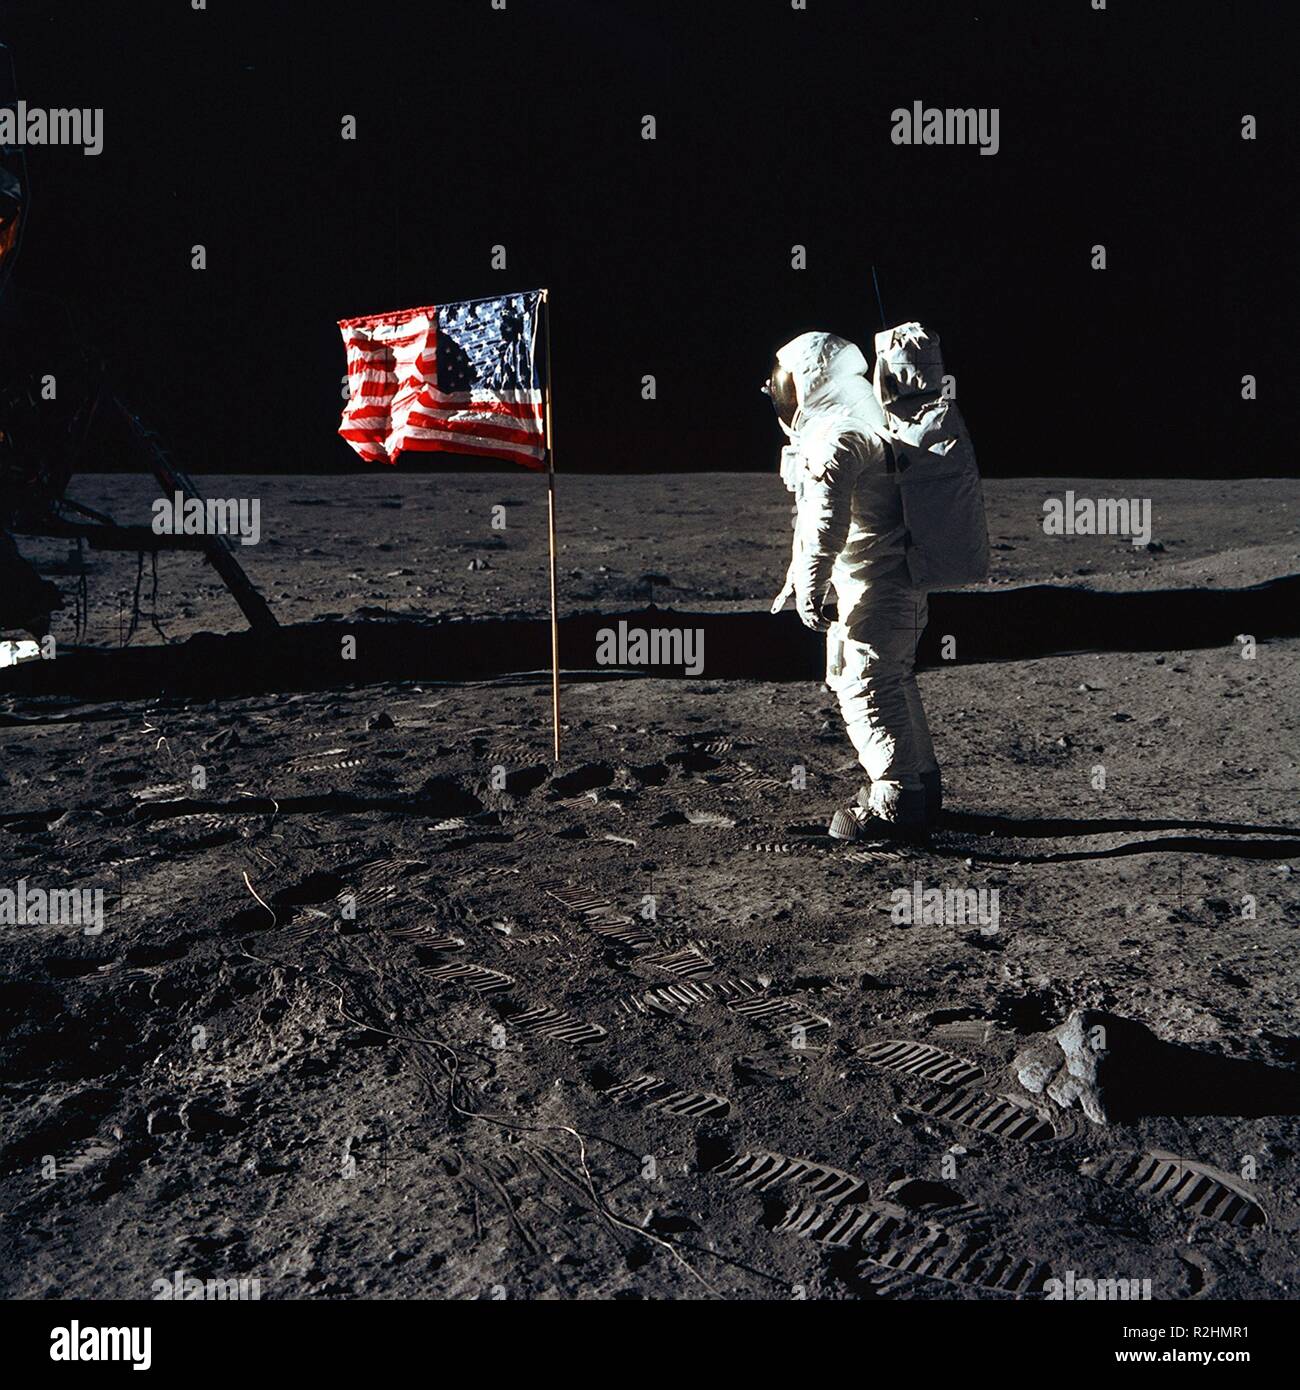 Expedicion del Apollo 11 en la luna. 1969. Stock Photo